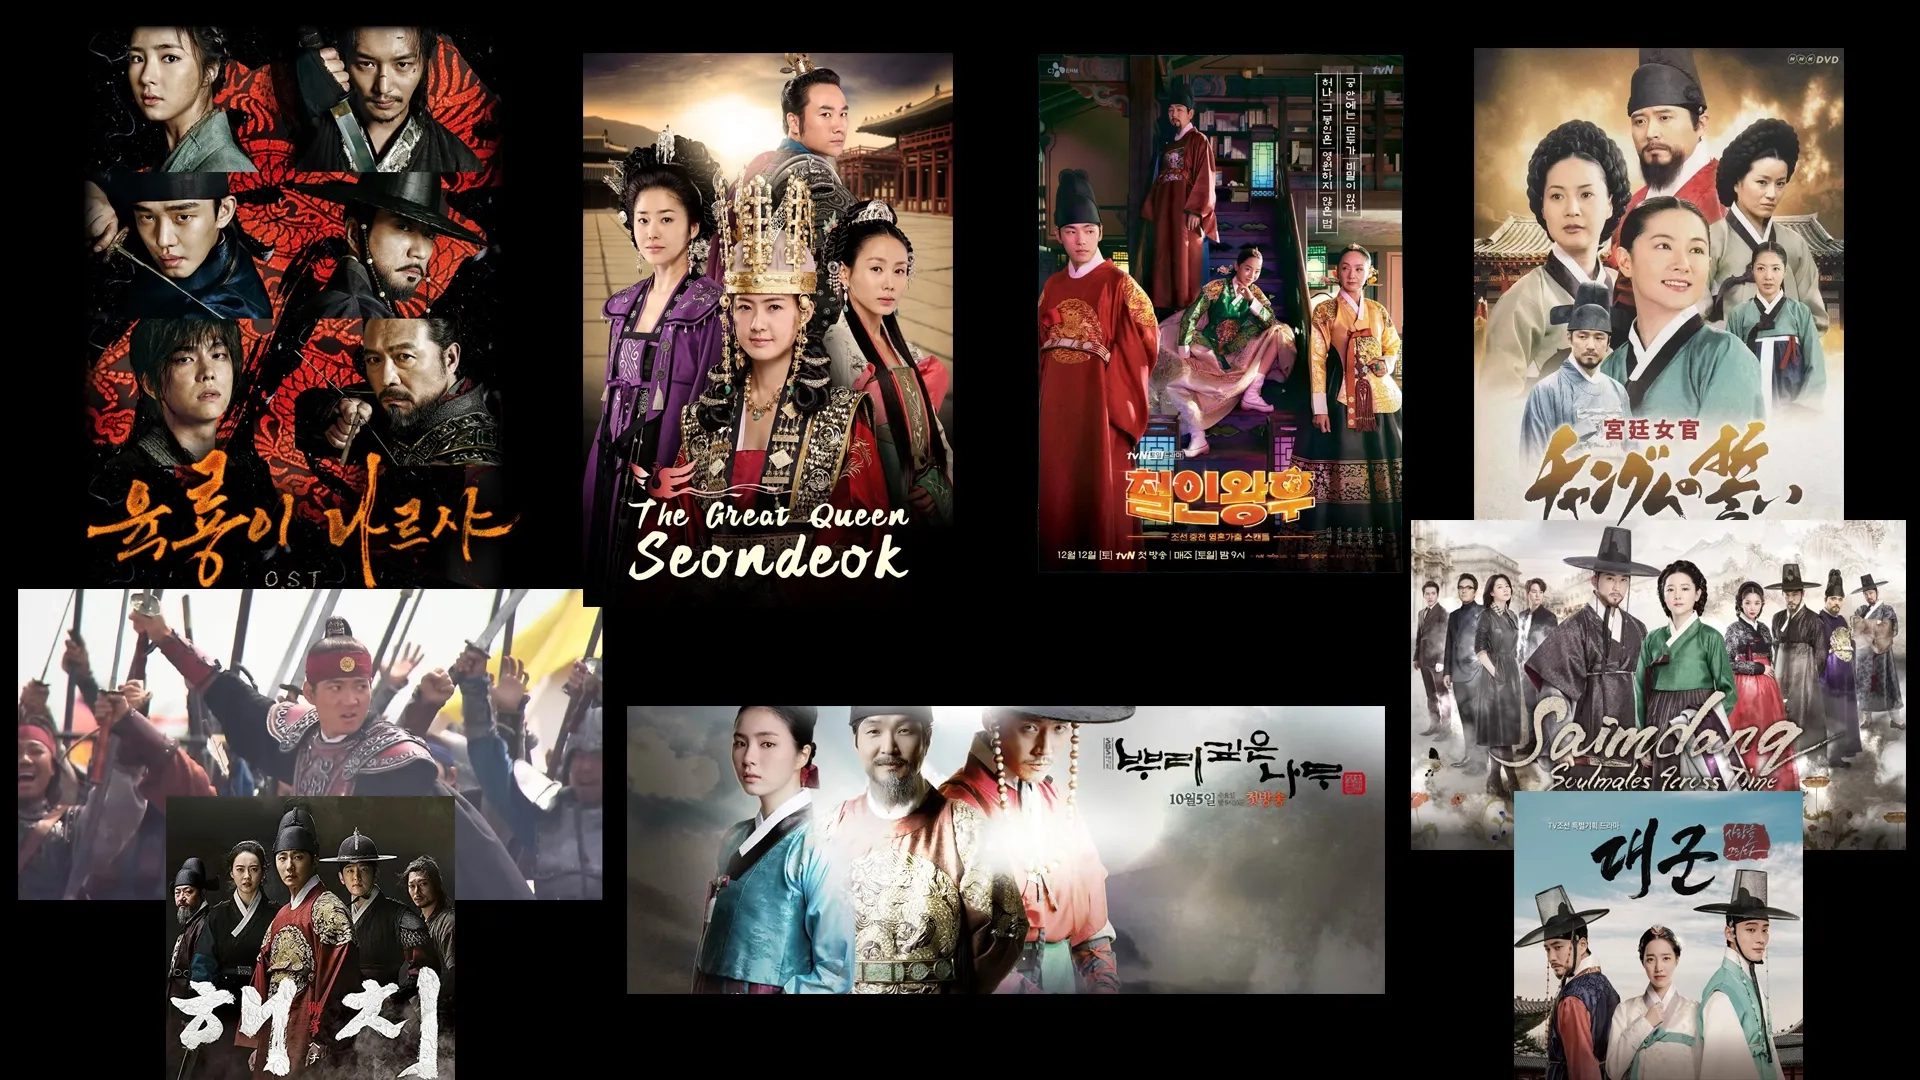 بهترین سریال های تاریخی کره ای از دوران چوسان قدیم تا کنون